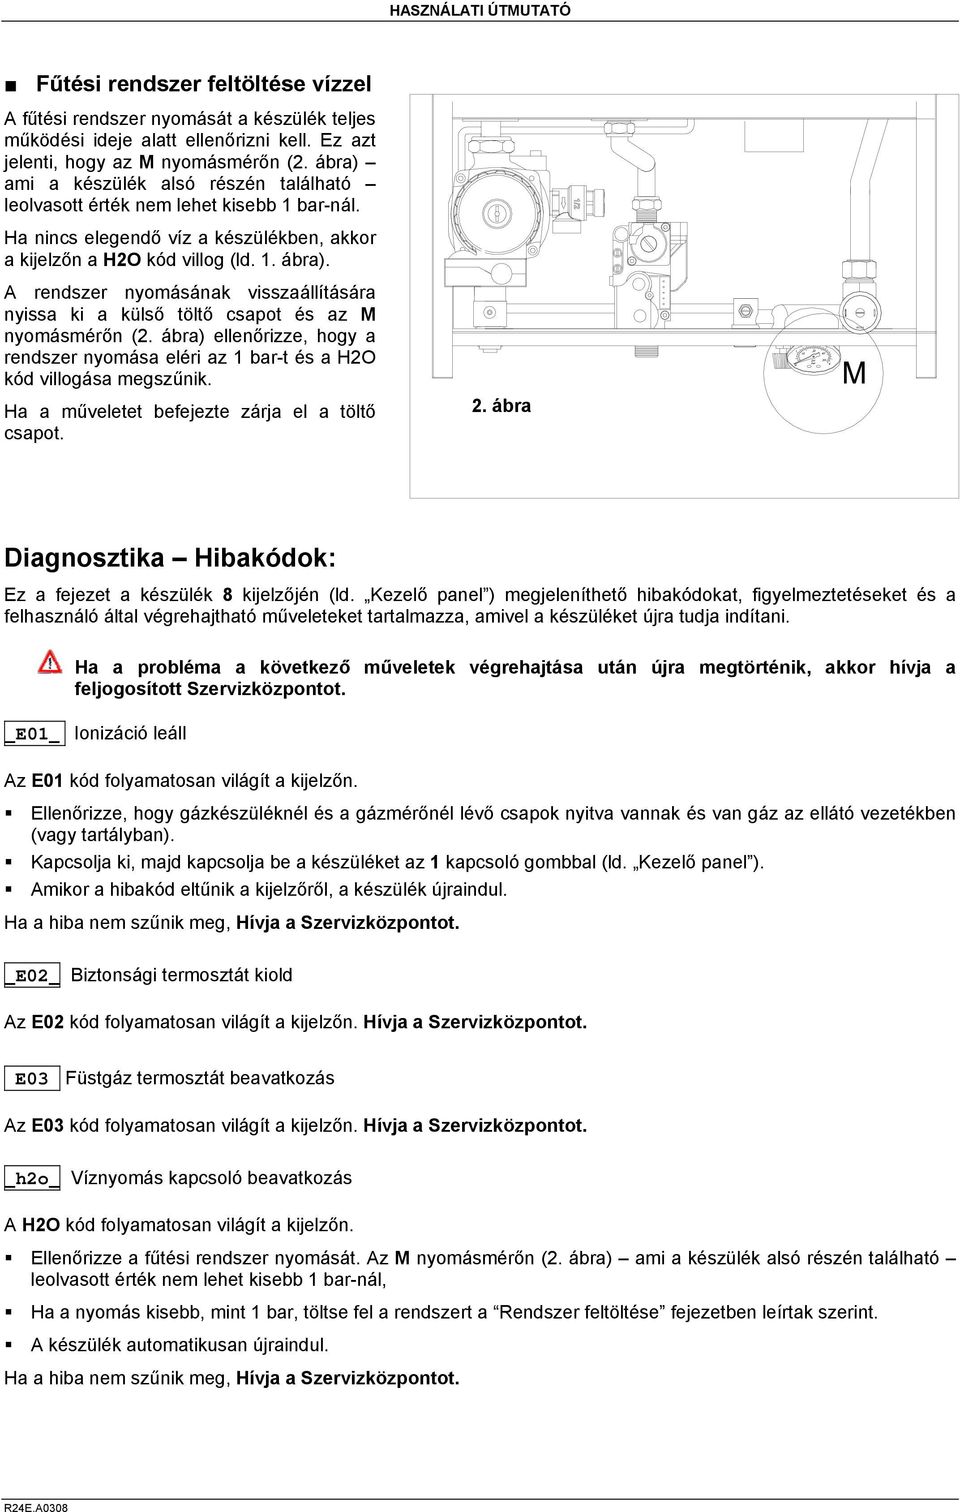 Használati útmutató. R 24 E Elite. készülékhez. CE 0694 Műszaki  dokumentáció RADIANT BRUCIATORI S.p.A. Montelabbate (PU) ITALY. Fali fűtő  gázkészülék - PDF Ingyenes letöltés